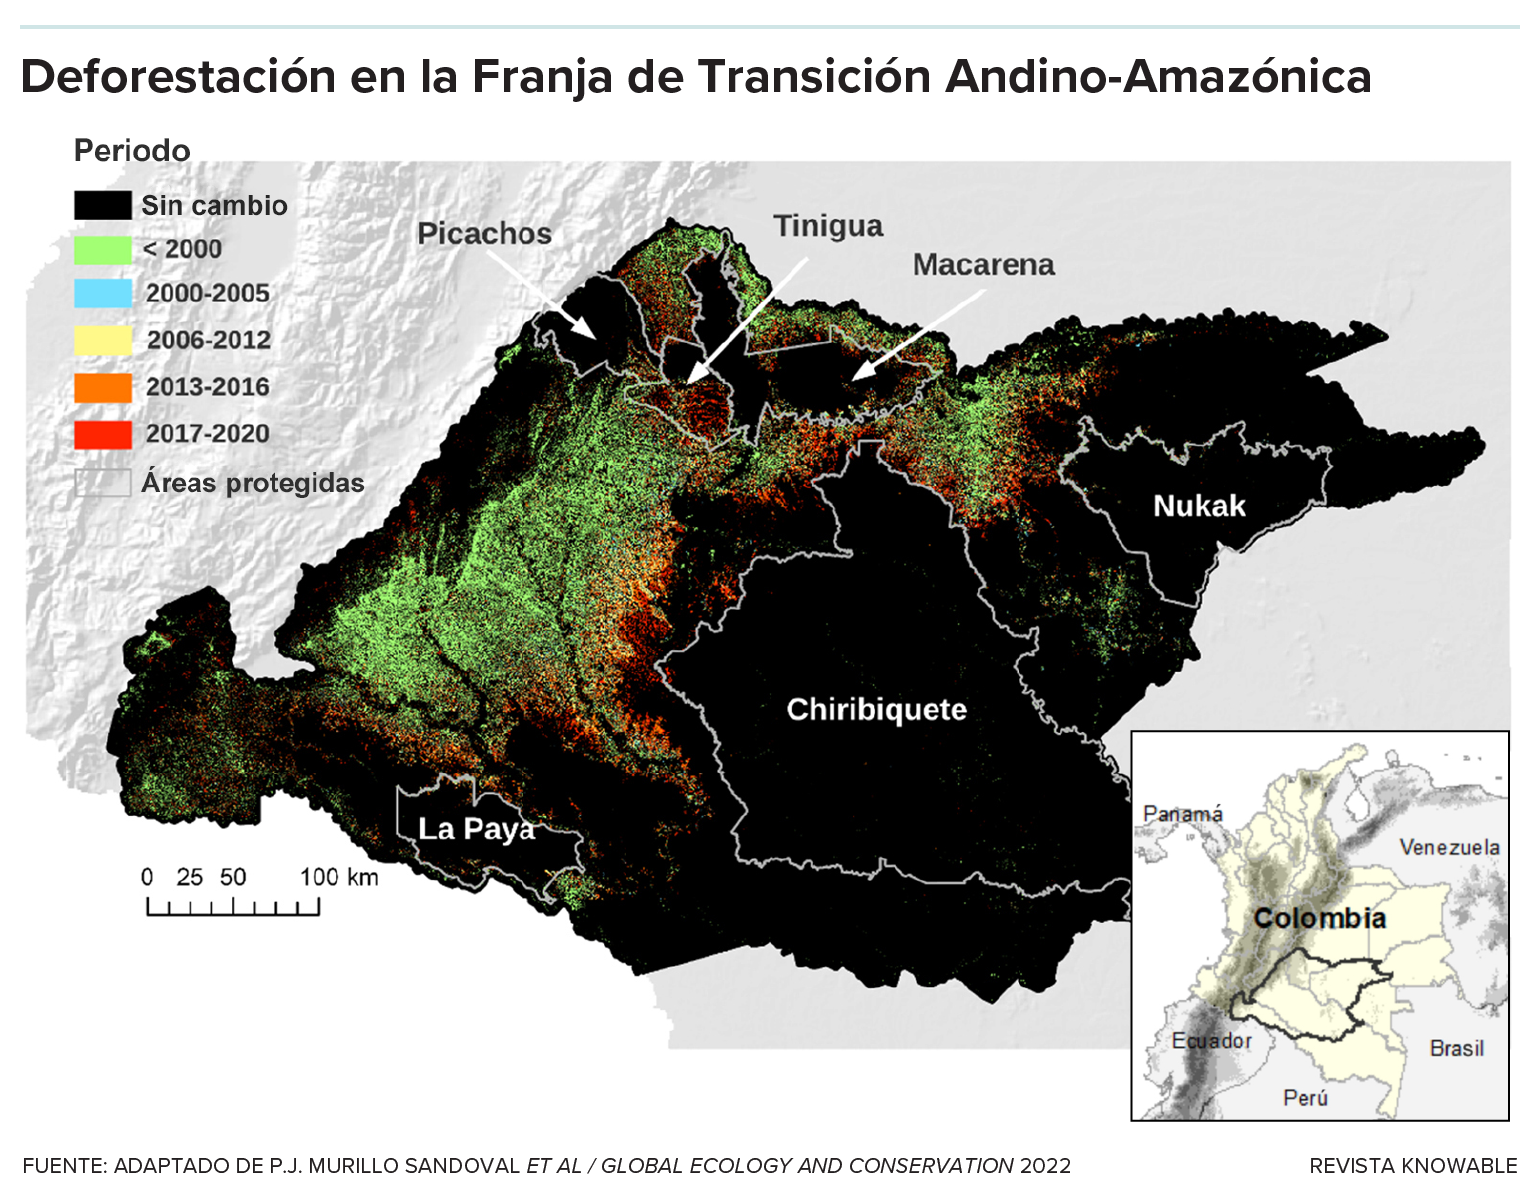 El mapa muestra la deforestación en la Franja de Transición Andino-Amazónica en Colombia a lo largo del tiempo. Las zonas en negro representan el bosque conservado y se muestran dentro de ellas, con líneas blancas, los límites de seis áreas protegidas. Con colores, se resalta el arco de deforestación entre los Andes y la Amazonía. El mapa muestra que solo se conserva la conexión entre ambos ecosistemas a través de un camino formado por los parques nacionales Picachos, Tinigua y Macarena ; y al sur por un corredor que incluye al parque La Paya